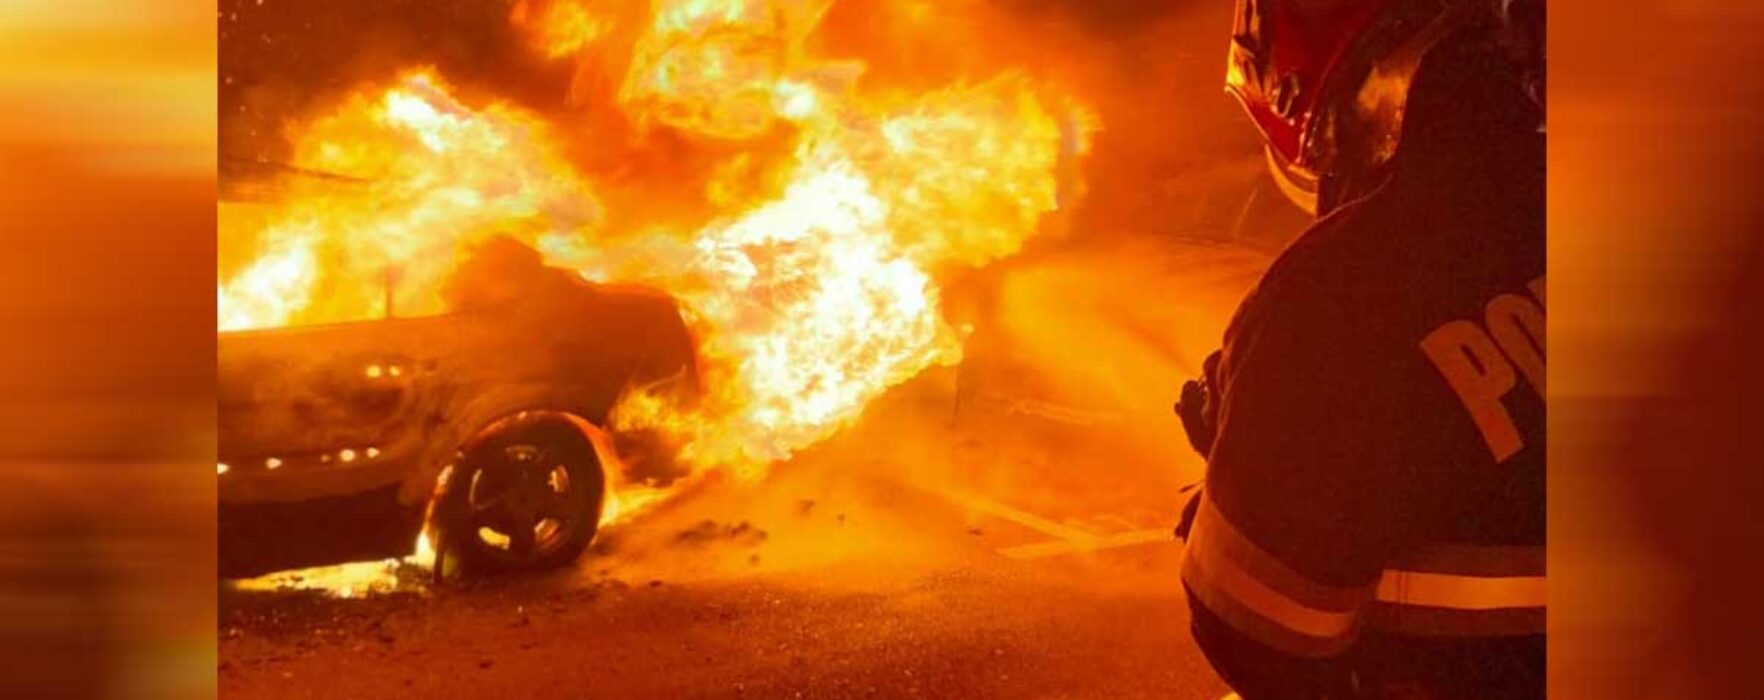 Târgovişte: Un autoturism parcat a luat foc, au fost afectate alte două şi două balcoane